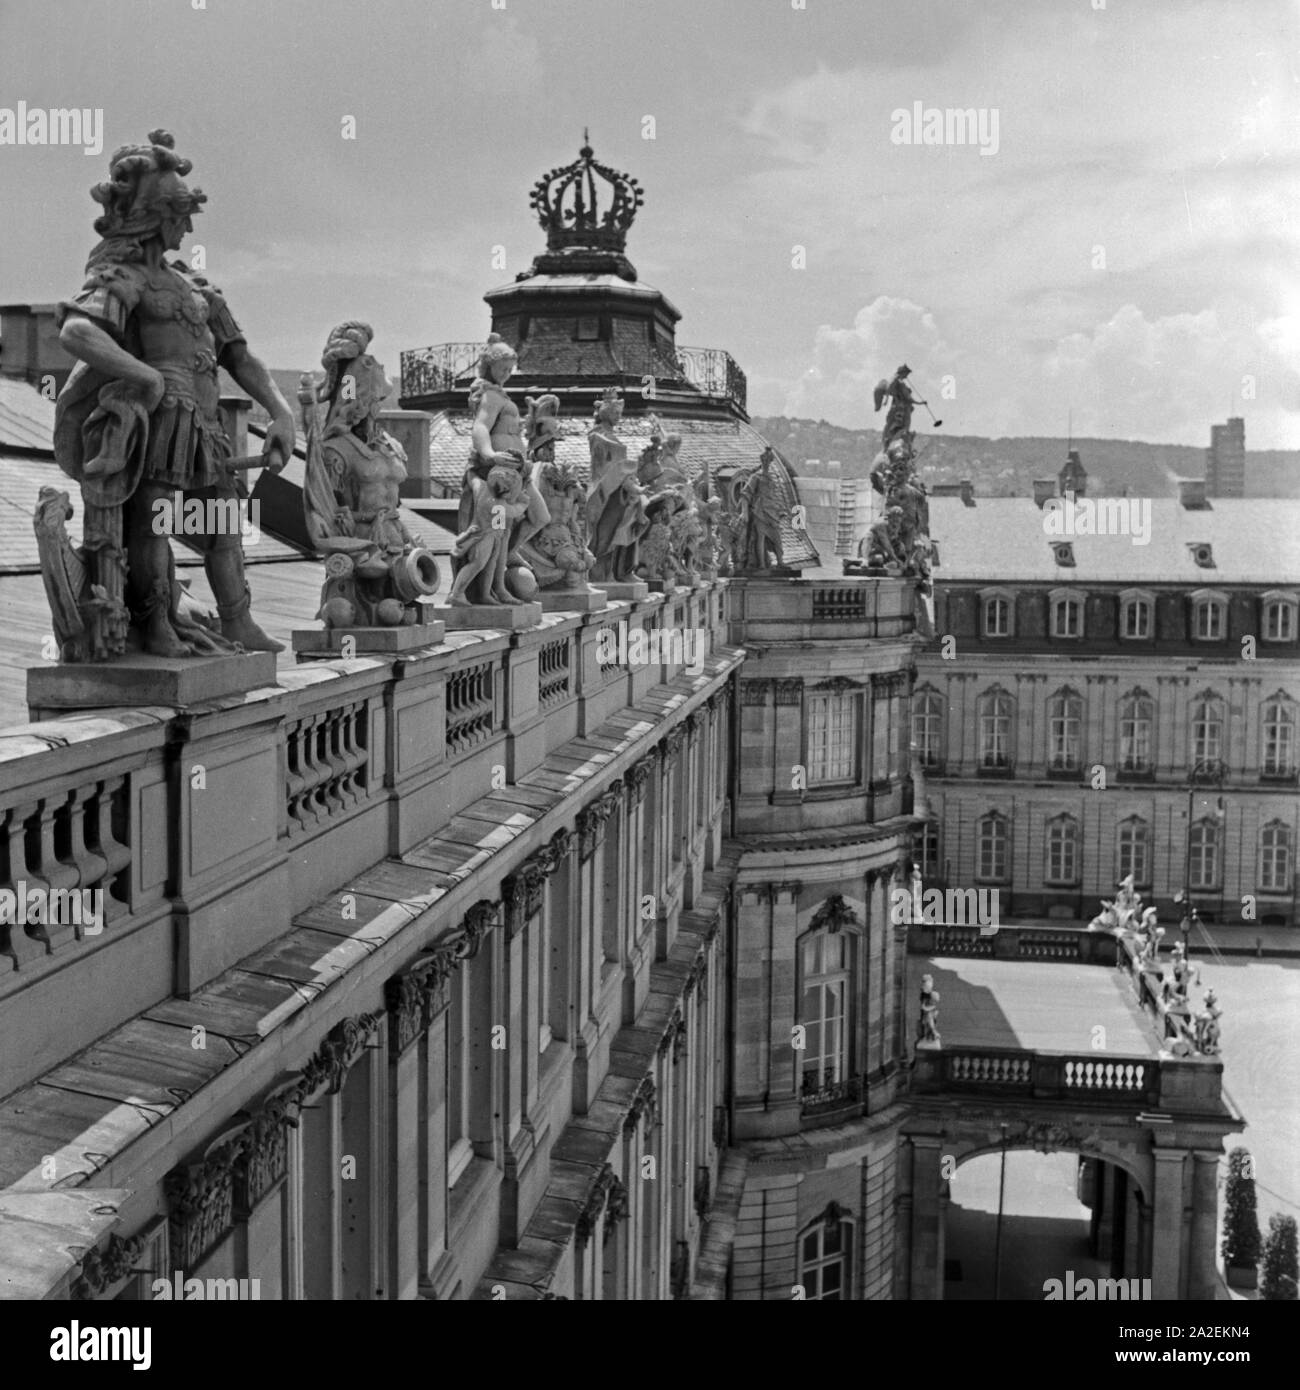 Die Statuen auf dem Dach des Neuen strapaziert in Stuttgart, Deutschland, 1930er Jahre. Skulpturen auf dem Dach des Neuen Schlosses in Stuttgart, Deutschland 1930. Stockfoto